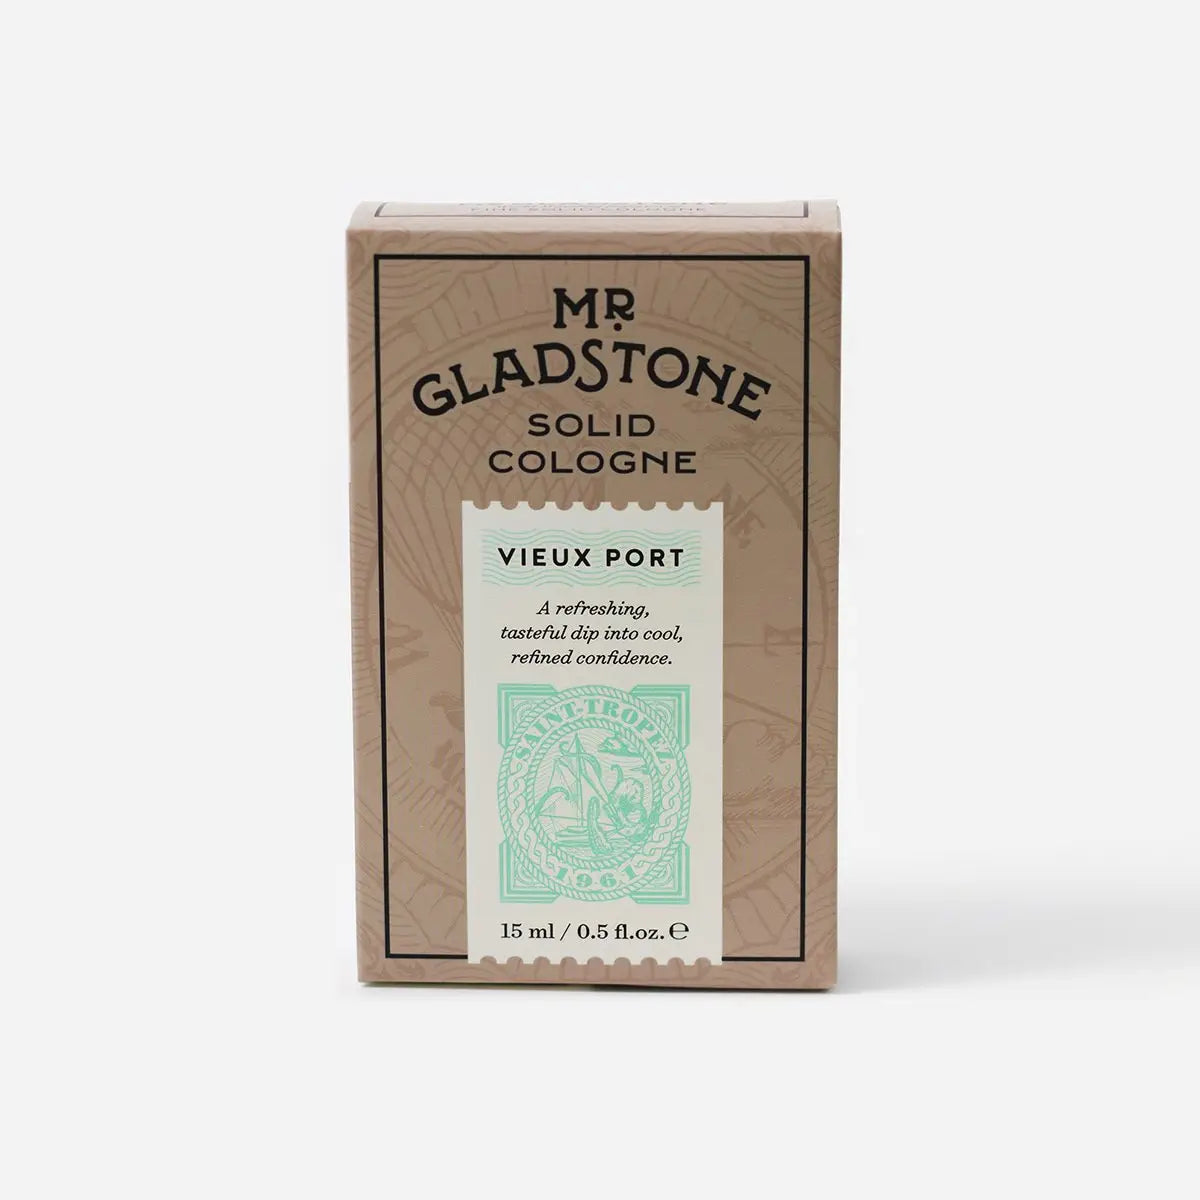 Mr Gladstone Solid Cologne